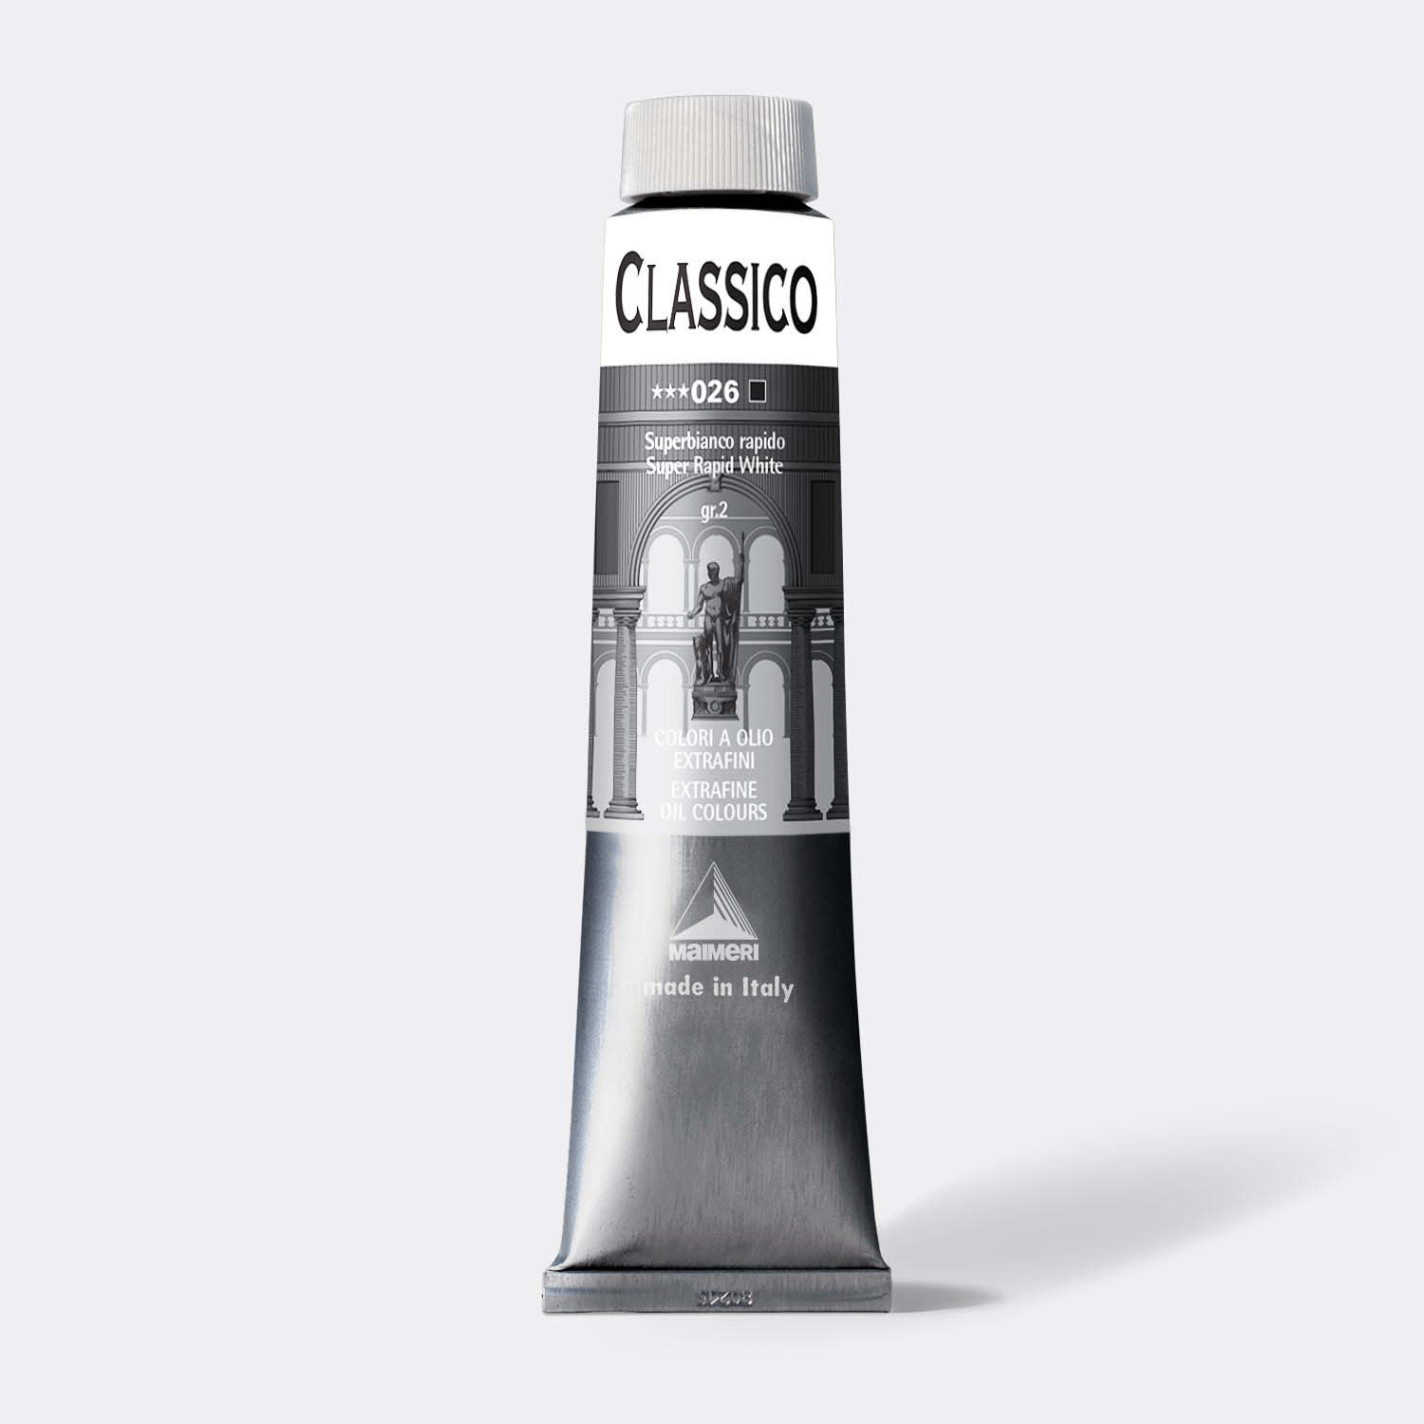 Classico Classico oil 200ml Super Rapid White